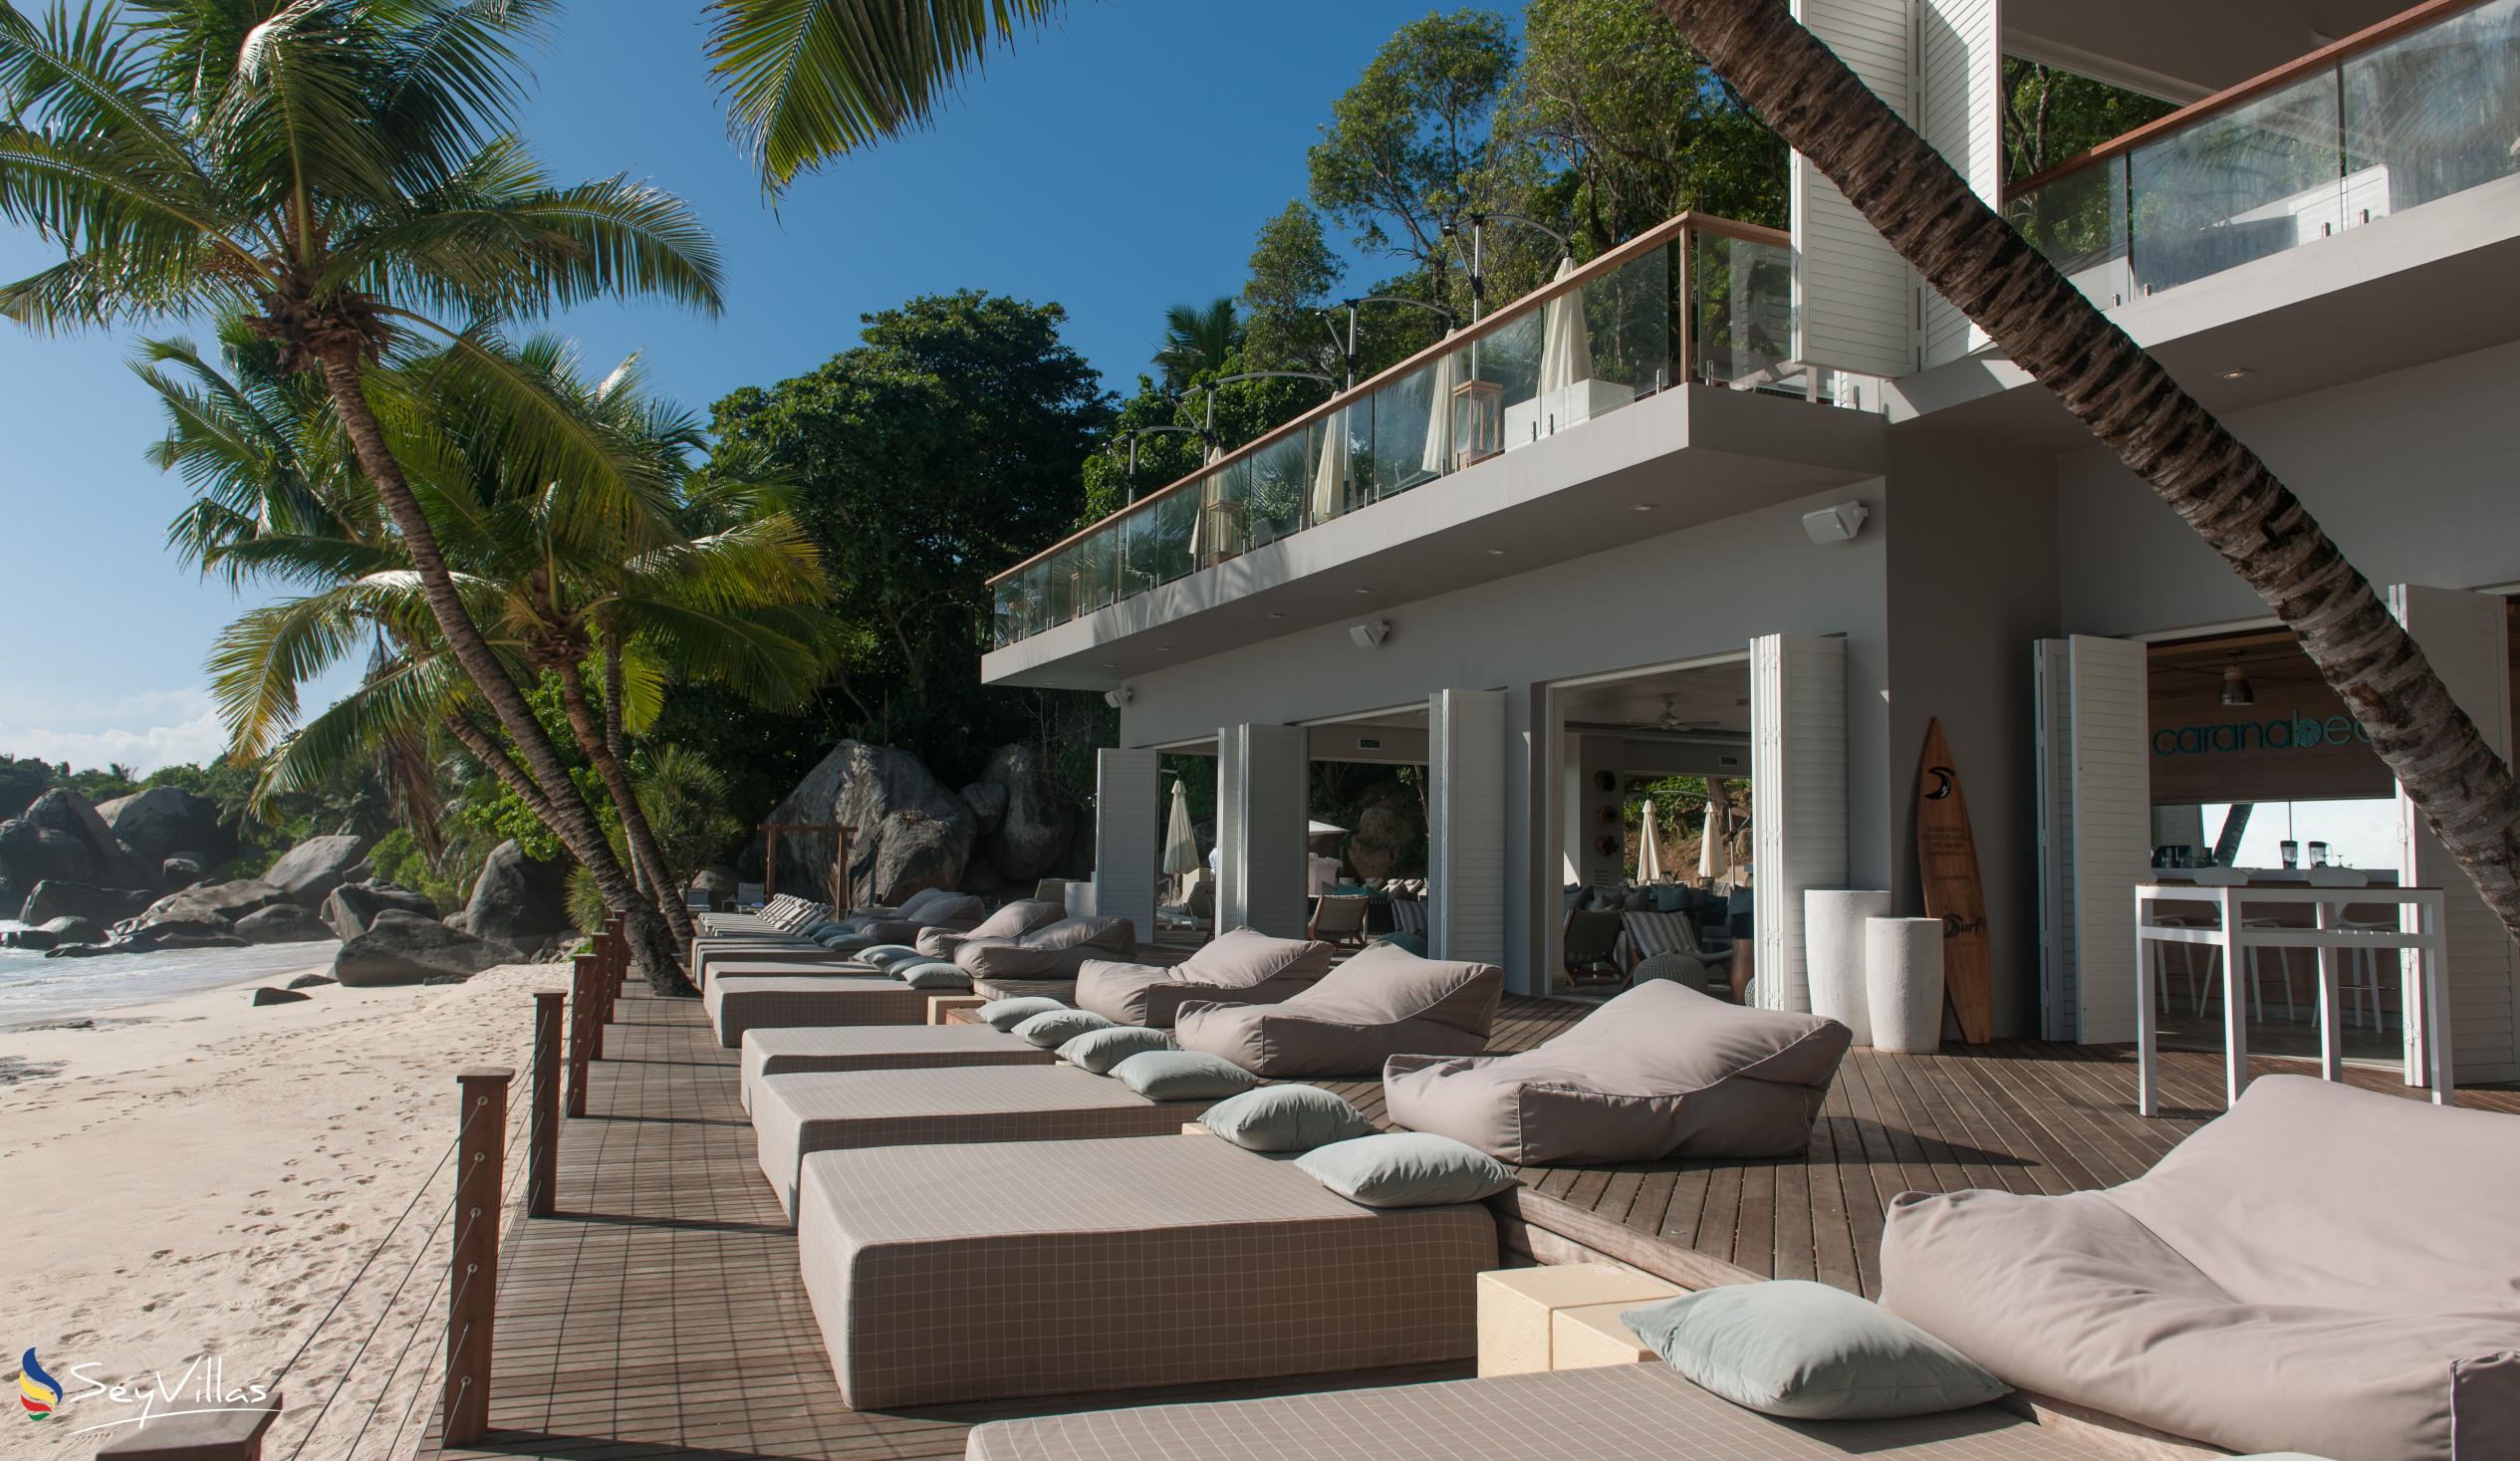 Foto 23: Carana Beach Hotel - Aussenbereich - Mahé (Seychellen)